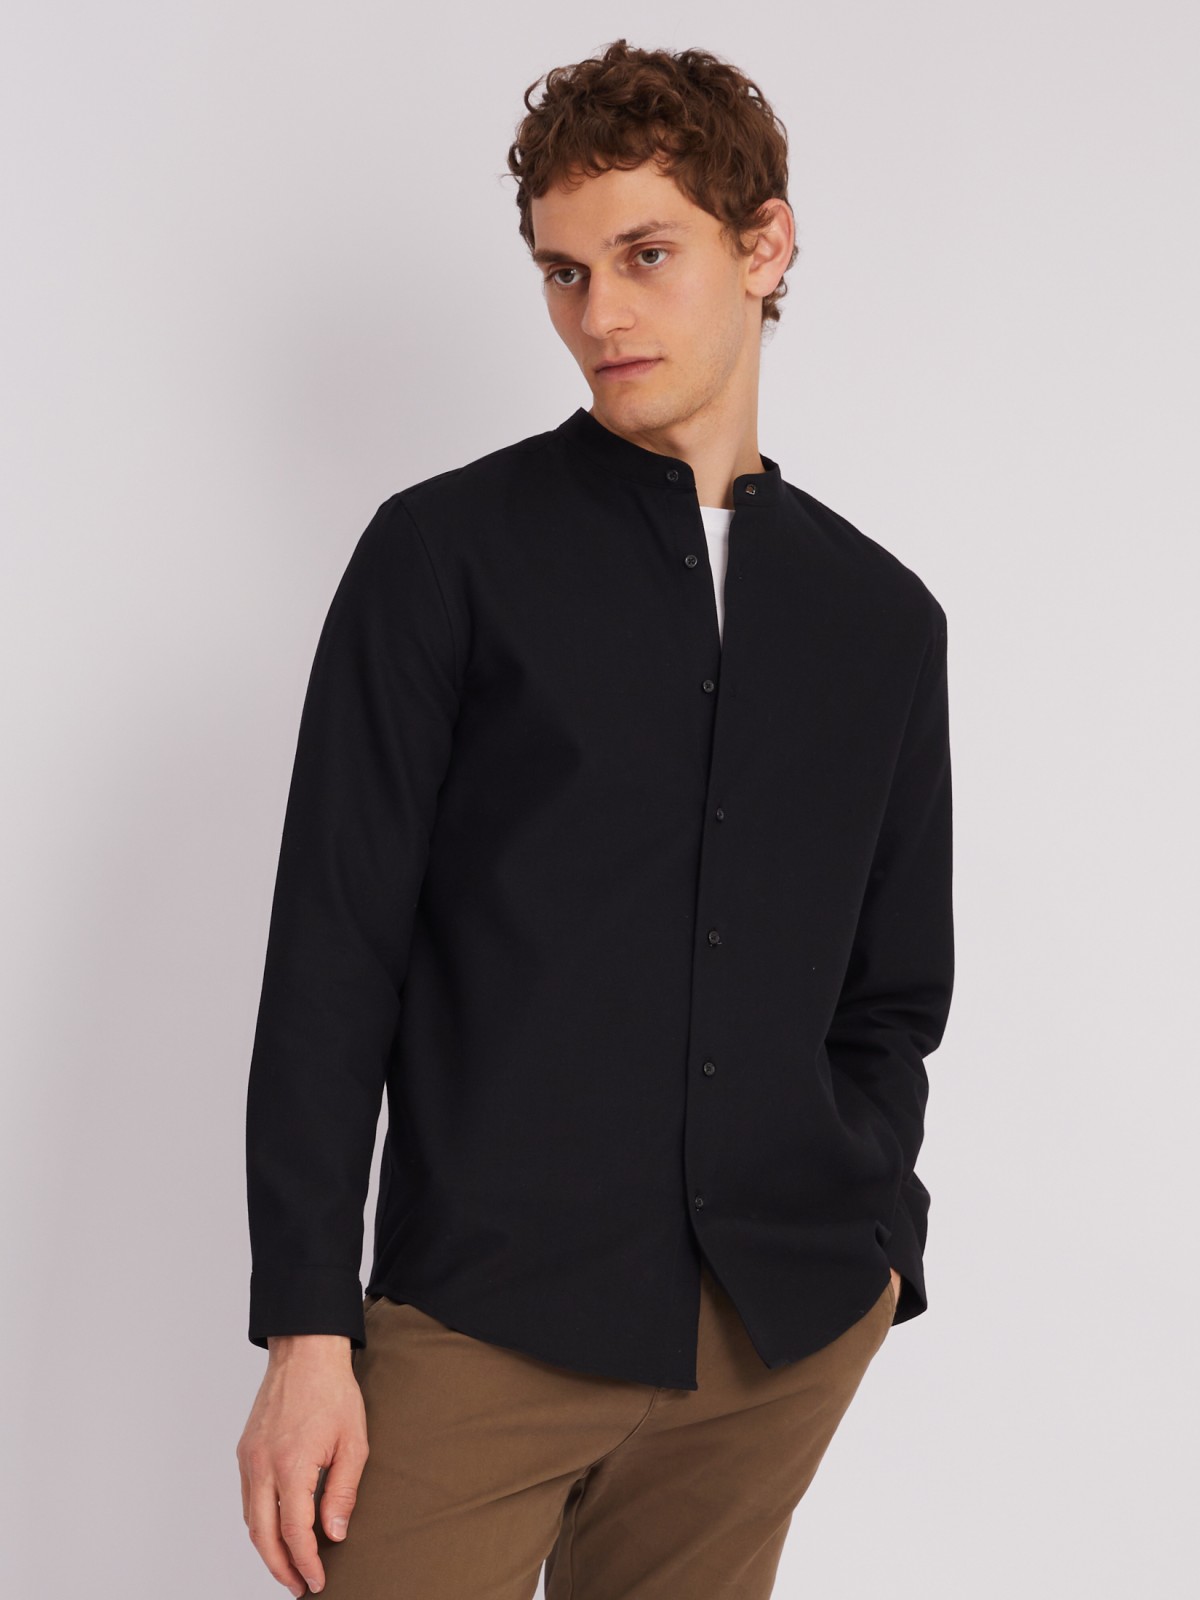 Офисная рубашка с воротником-стойкой и длинным рукавом zolla 013312159023, цвет черный, размер S - фото 6